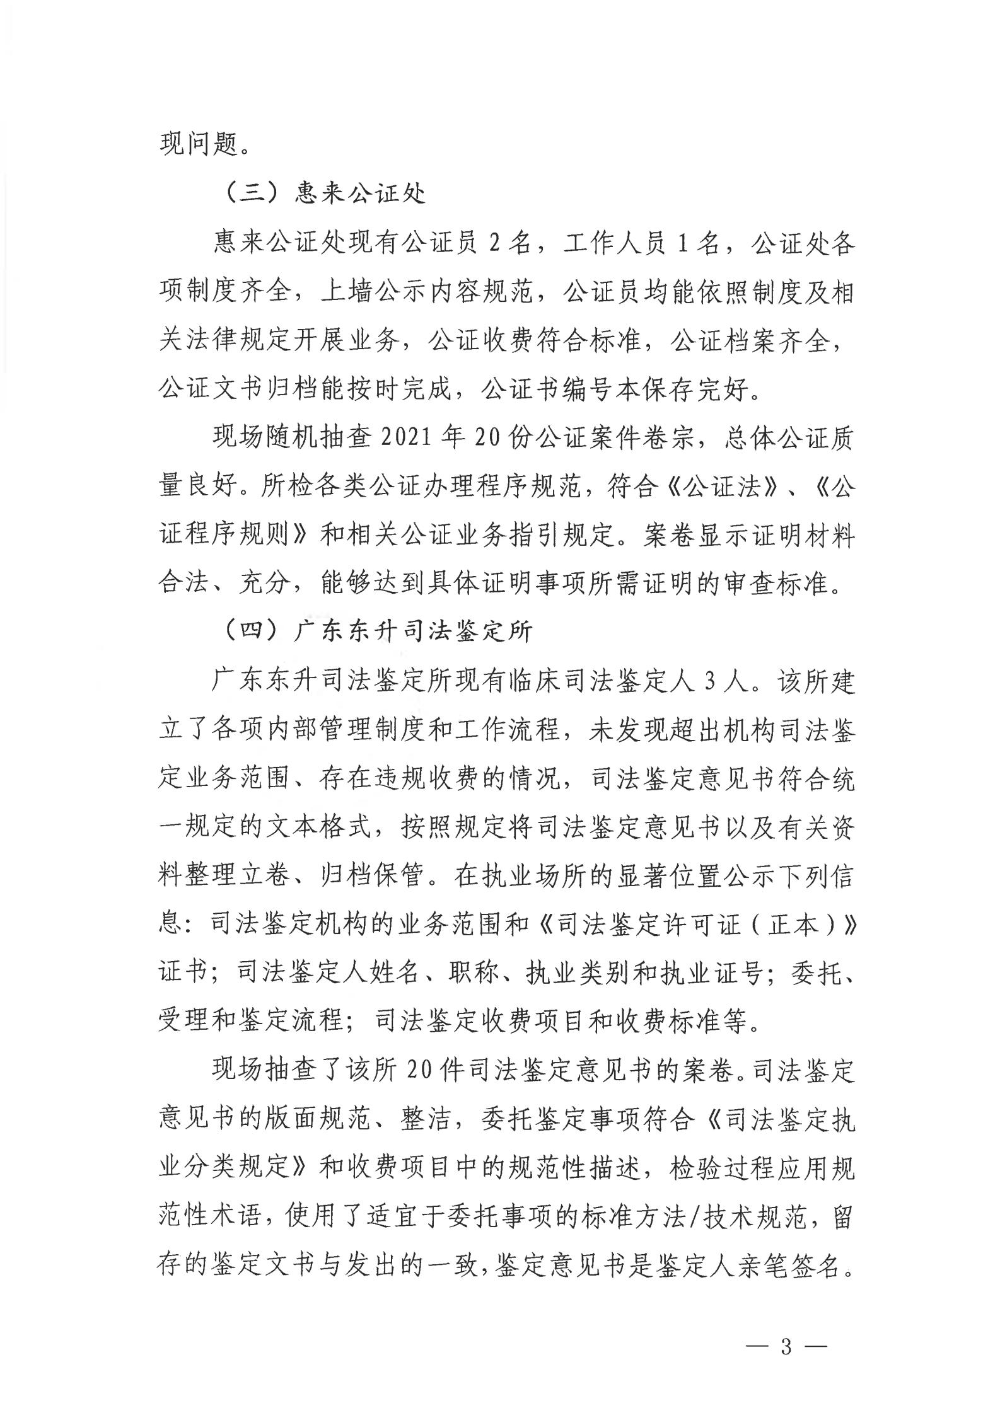 揭阳市司法局2021年法律服务机构“双随机、一公开”监管工作的情况报告_02.jpg